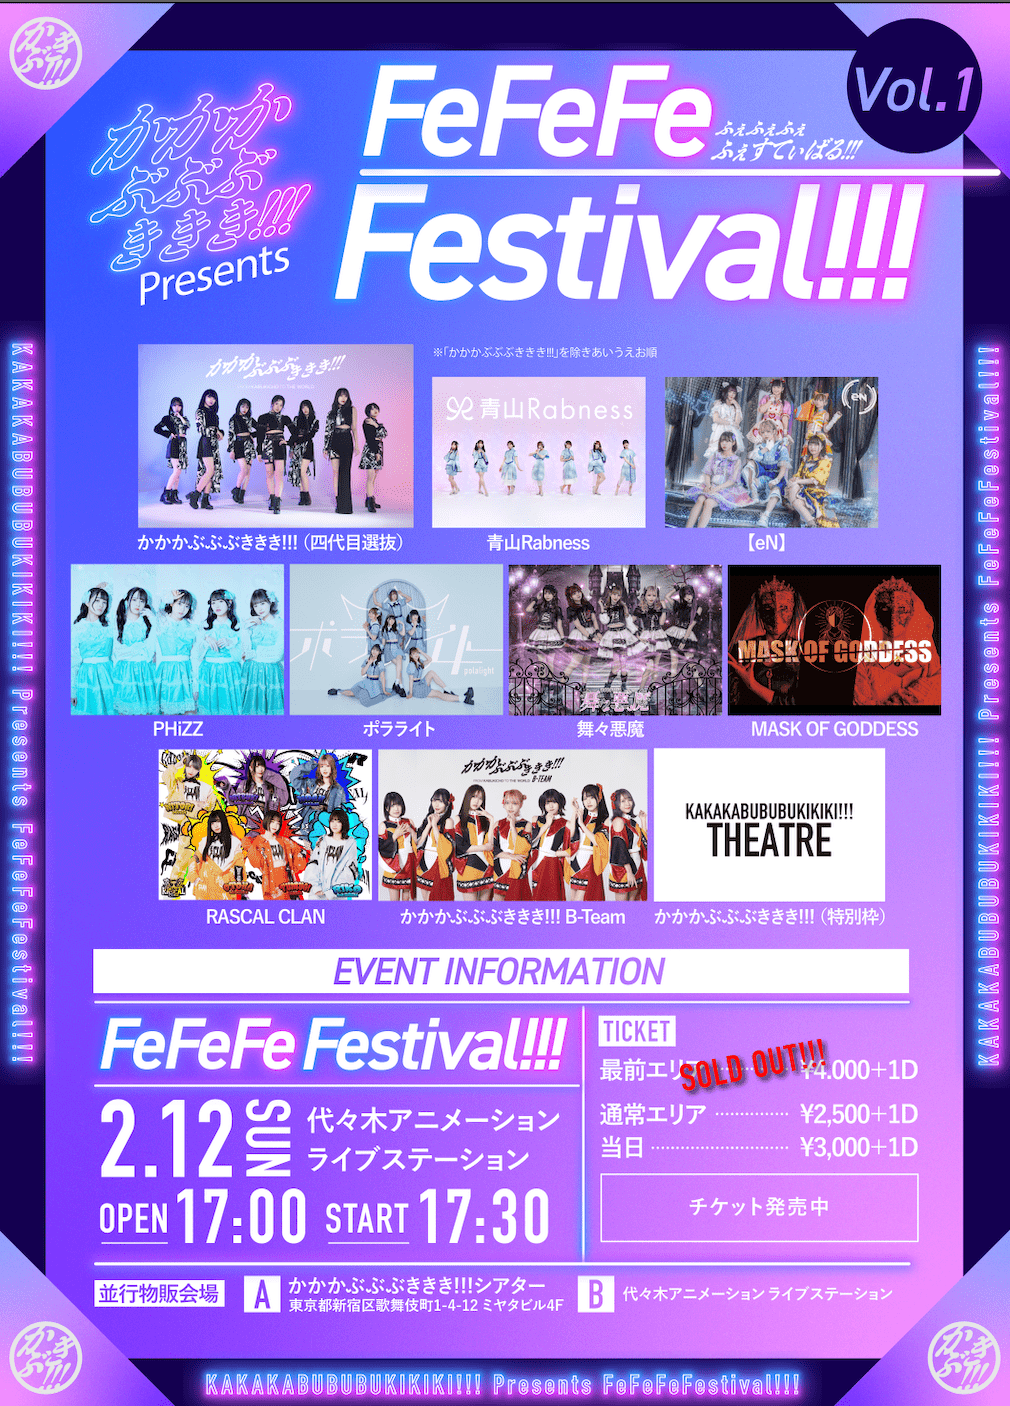 かかかぶぶぶききき!!! Presents FeFeFeFestival!!! Vol.1